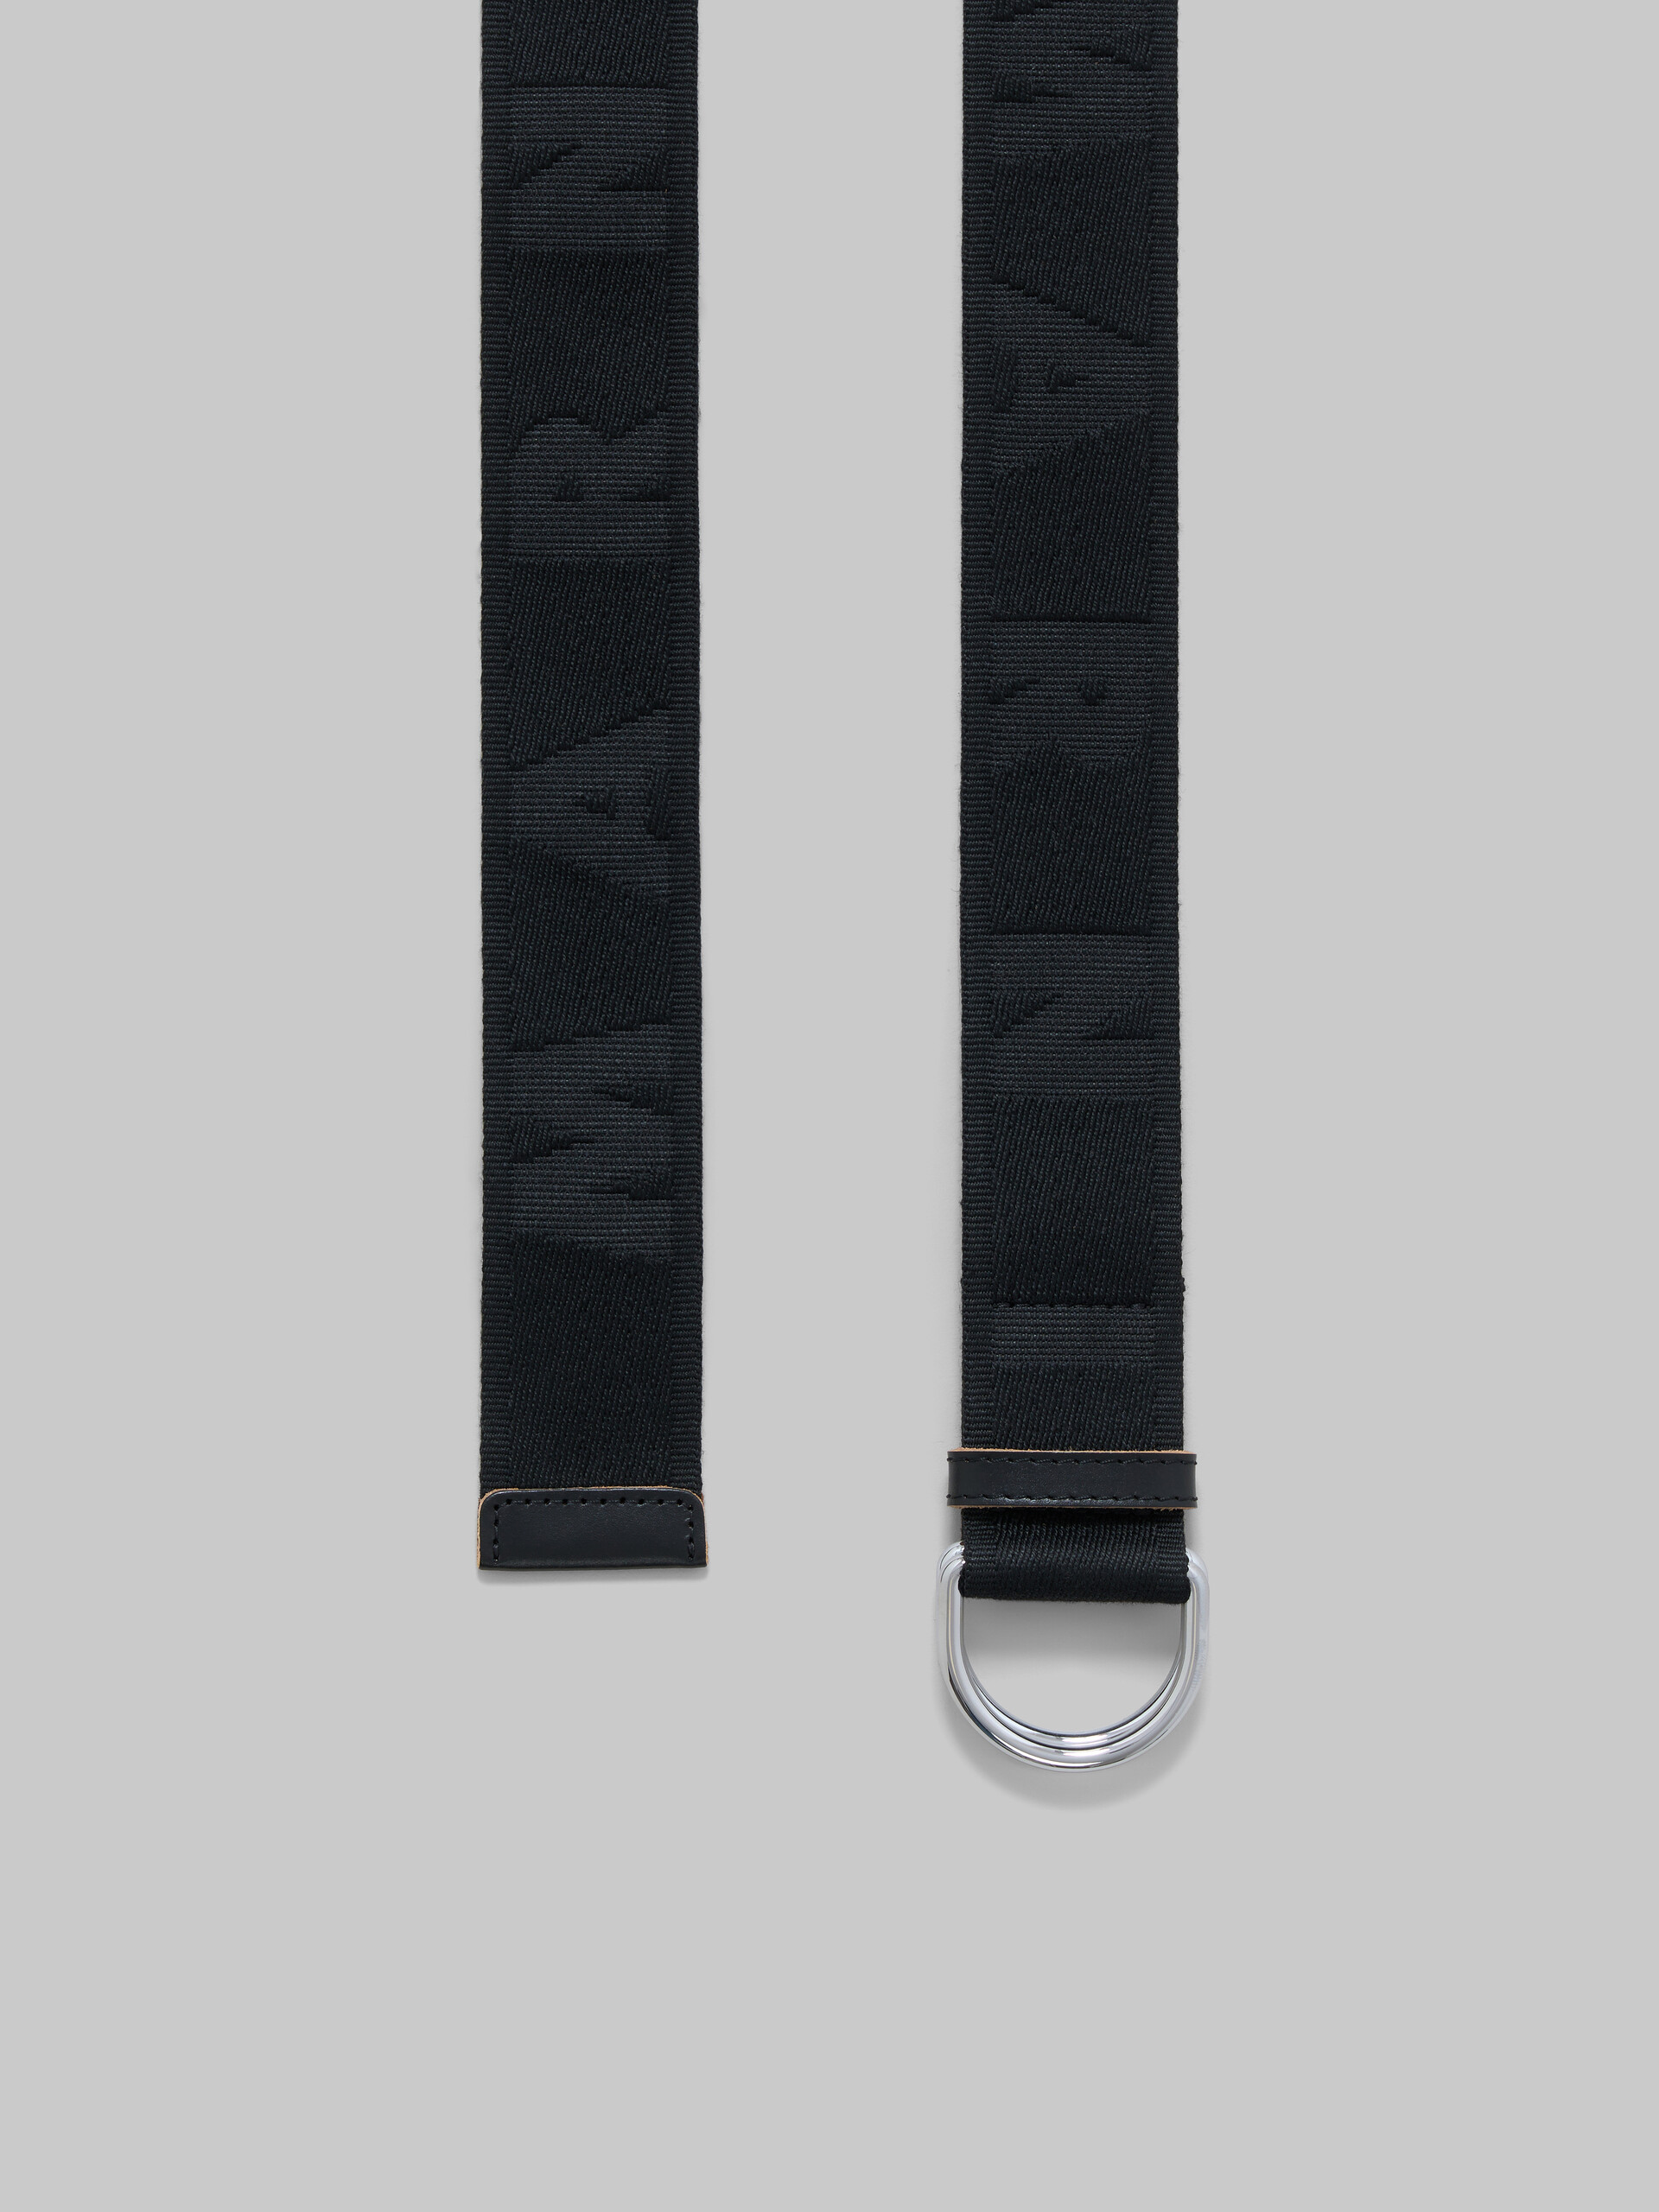 Cinturón de cinta con logotipo negro - Cinturones - Image 3